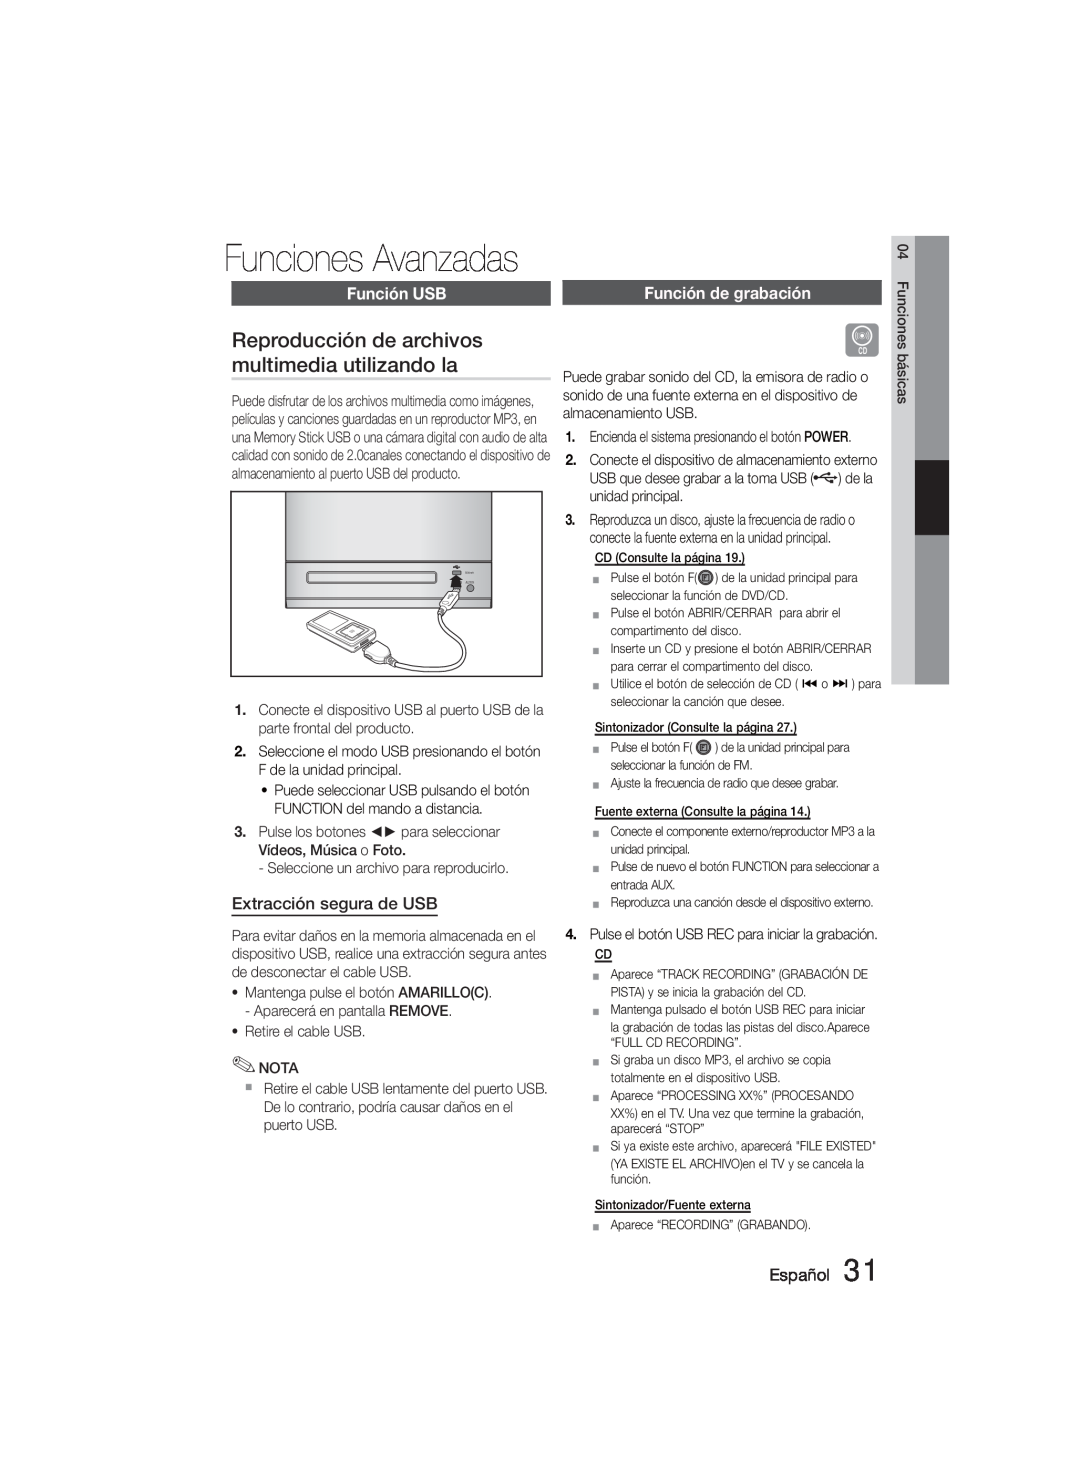 Samsung MM-D330D/ZF manual Funciones Avanzadas, Reproducción de archivos multimedia utilizando la, Función USB, Español 